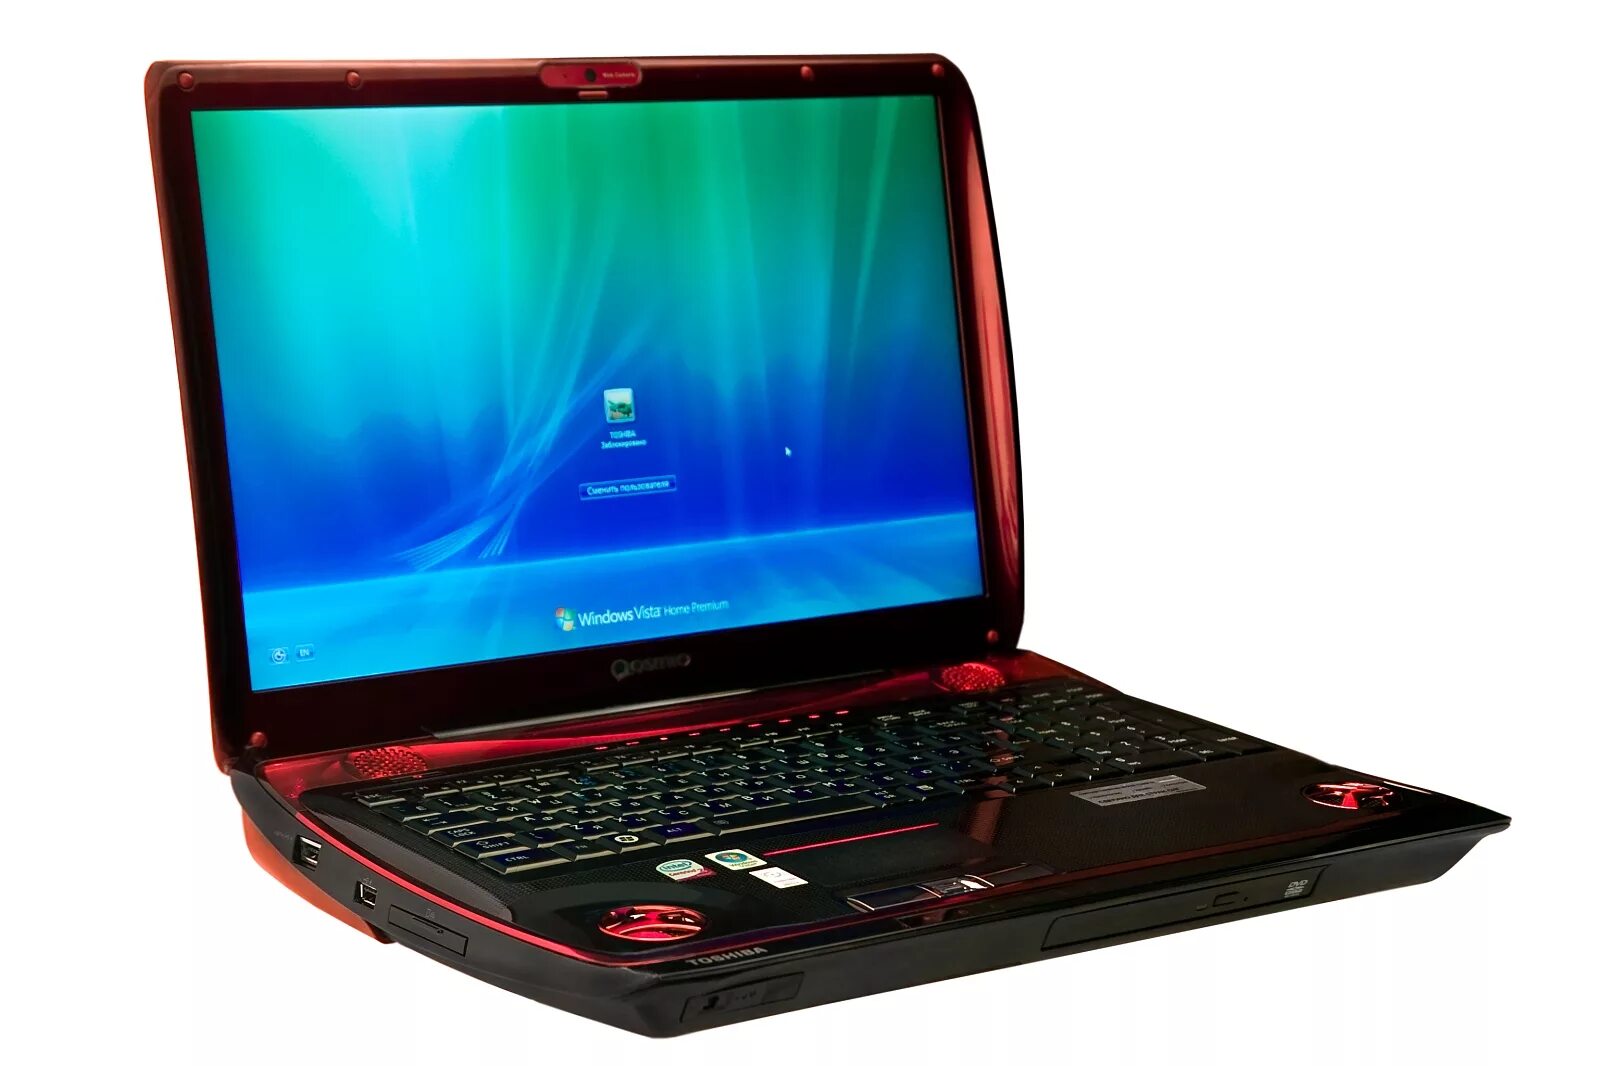 Игровой ноутбук Toshiba Qosmio. Qosmio x300-13r. Toshiba Qosmio x300-13p. Игровой ноутбук за 30 к ДНС. Интернет магазин ноутбуков недорого